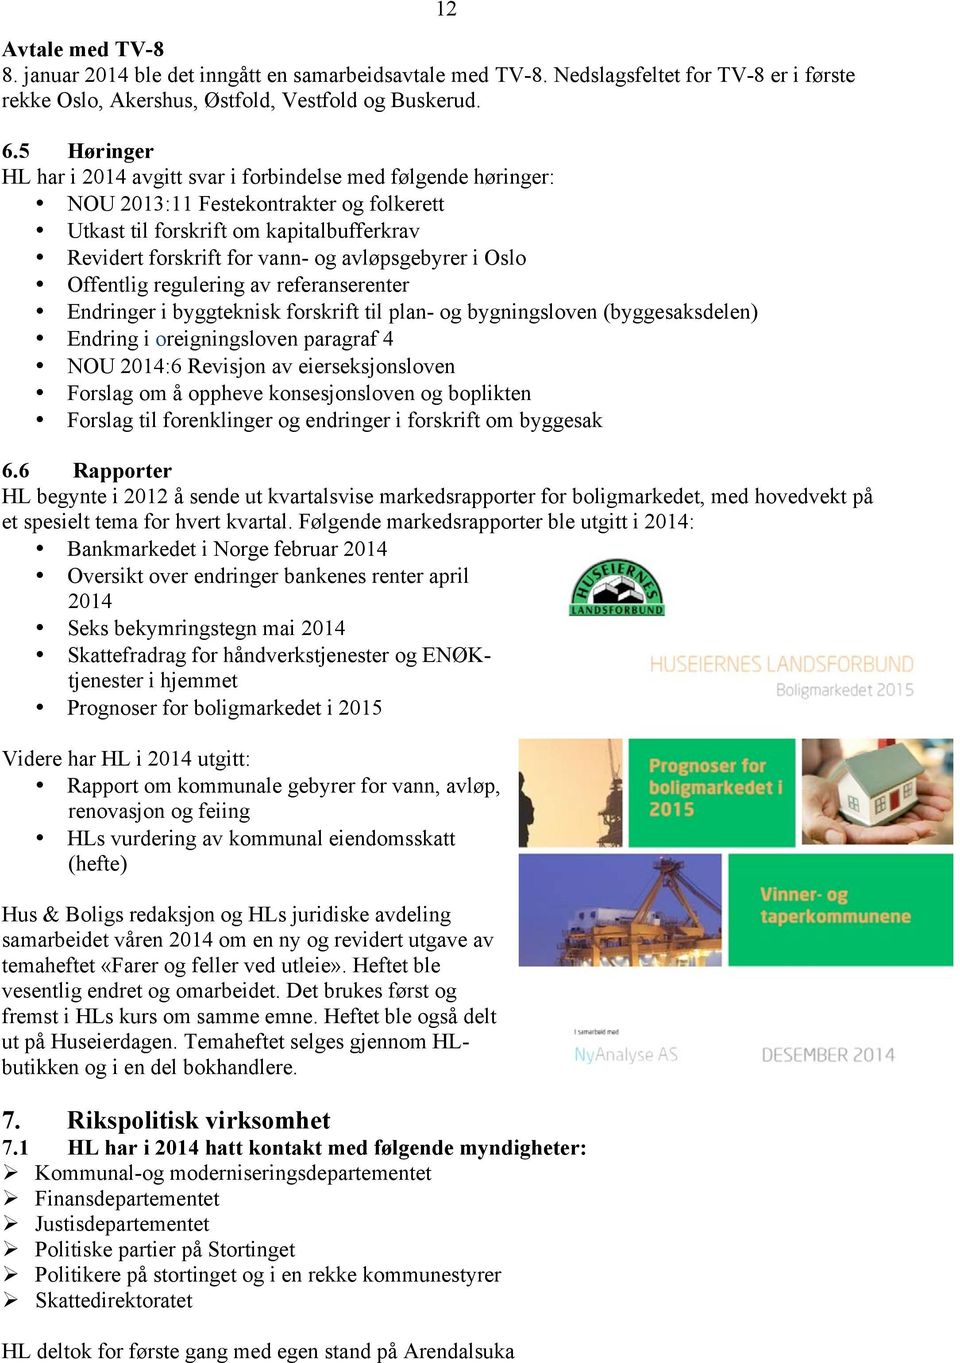 avløpsgebyrer i Oslo Offentlig regulering av referanserenter Endringer i byggteknisk forskrift til plan- og bygningsloven (byggesaksdelen) Endring i oreigningsloven paragraf 4 NOU 2014:6 Revisjon av